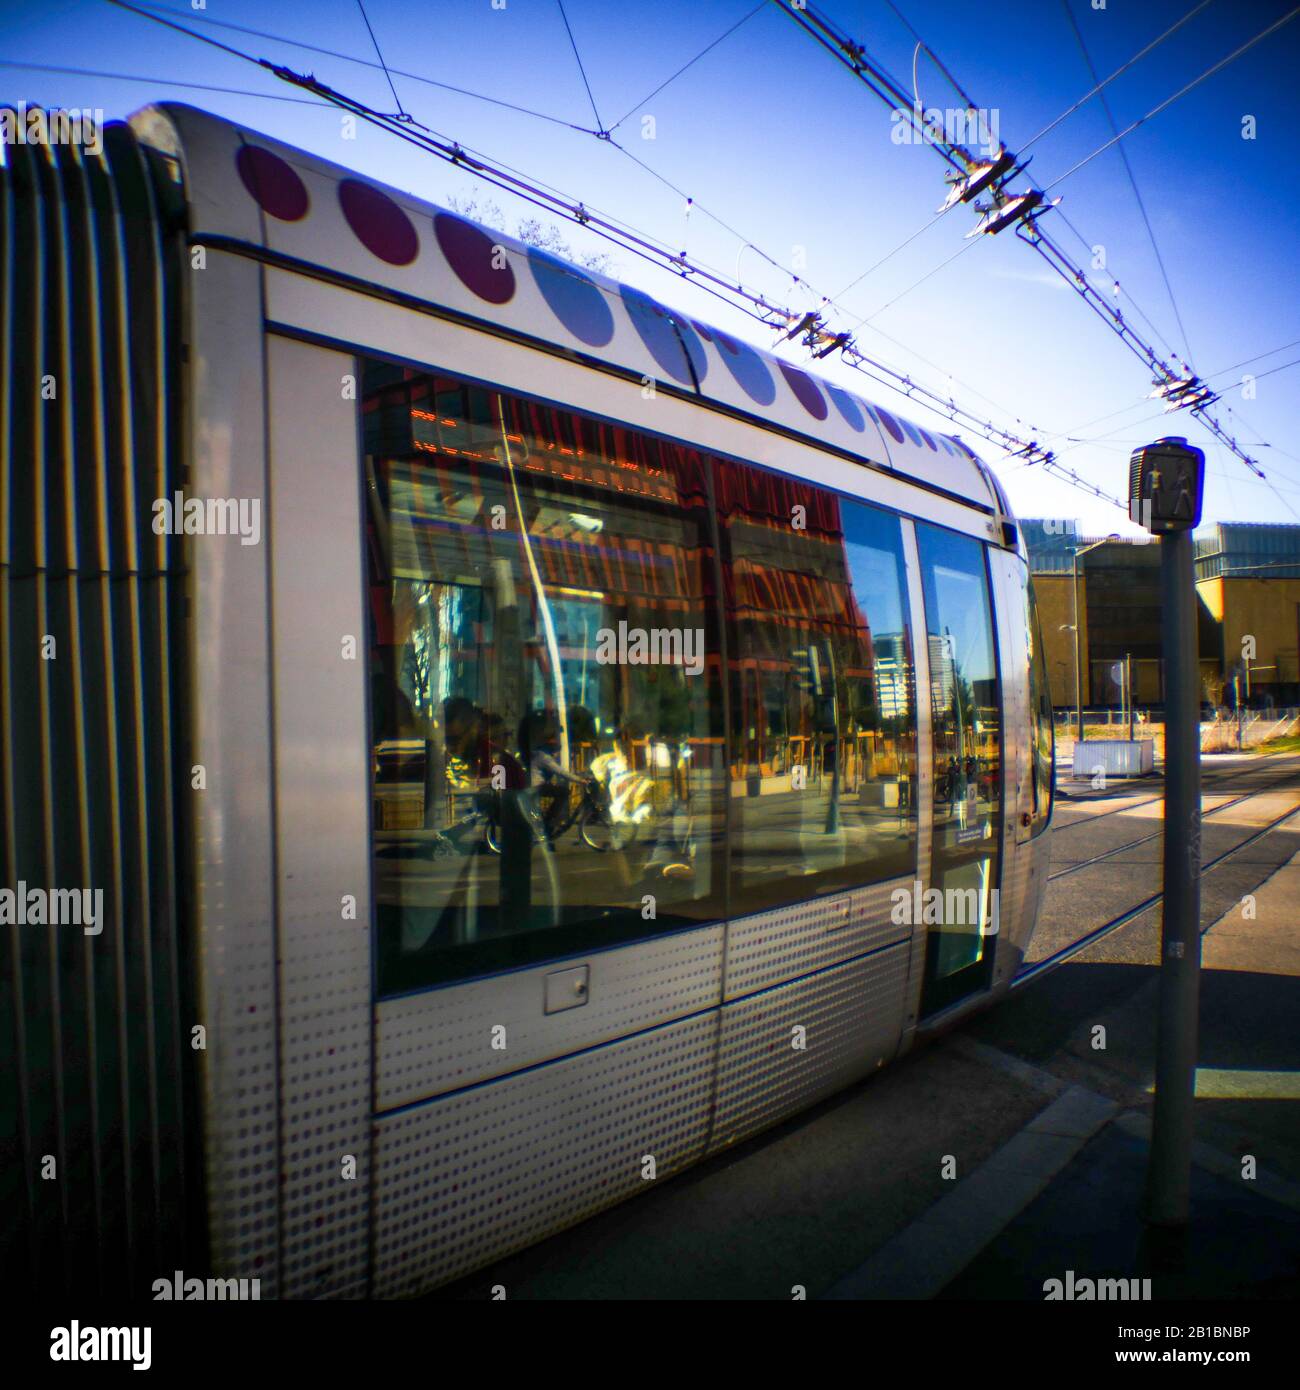 T4 line tram train, La Part-Dieu, Lyon, France Stock Photo